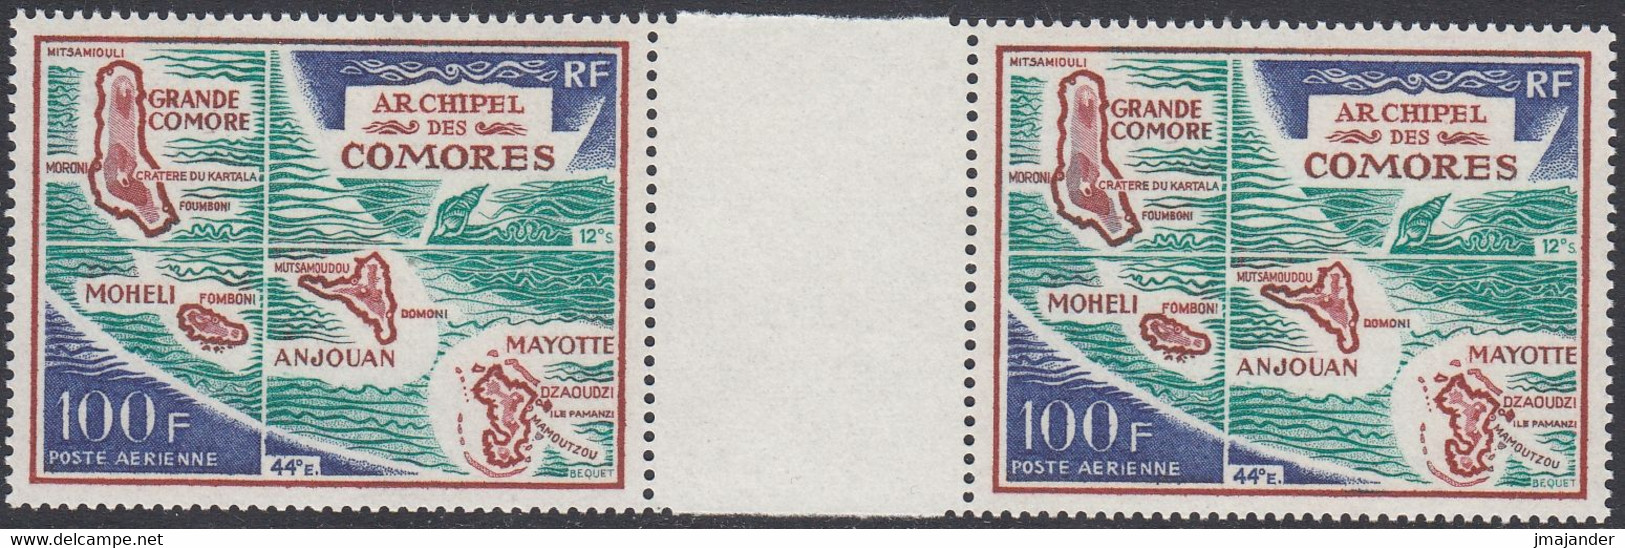 Comoros 1971 - Airmail Stamp: Map Of The Comoros Archipelago - Gutter Pair Mi 123 ** MNH - Comores (1975-...)